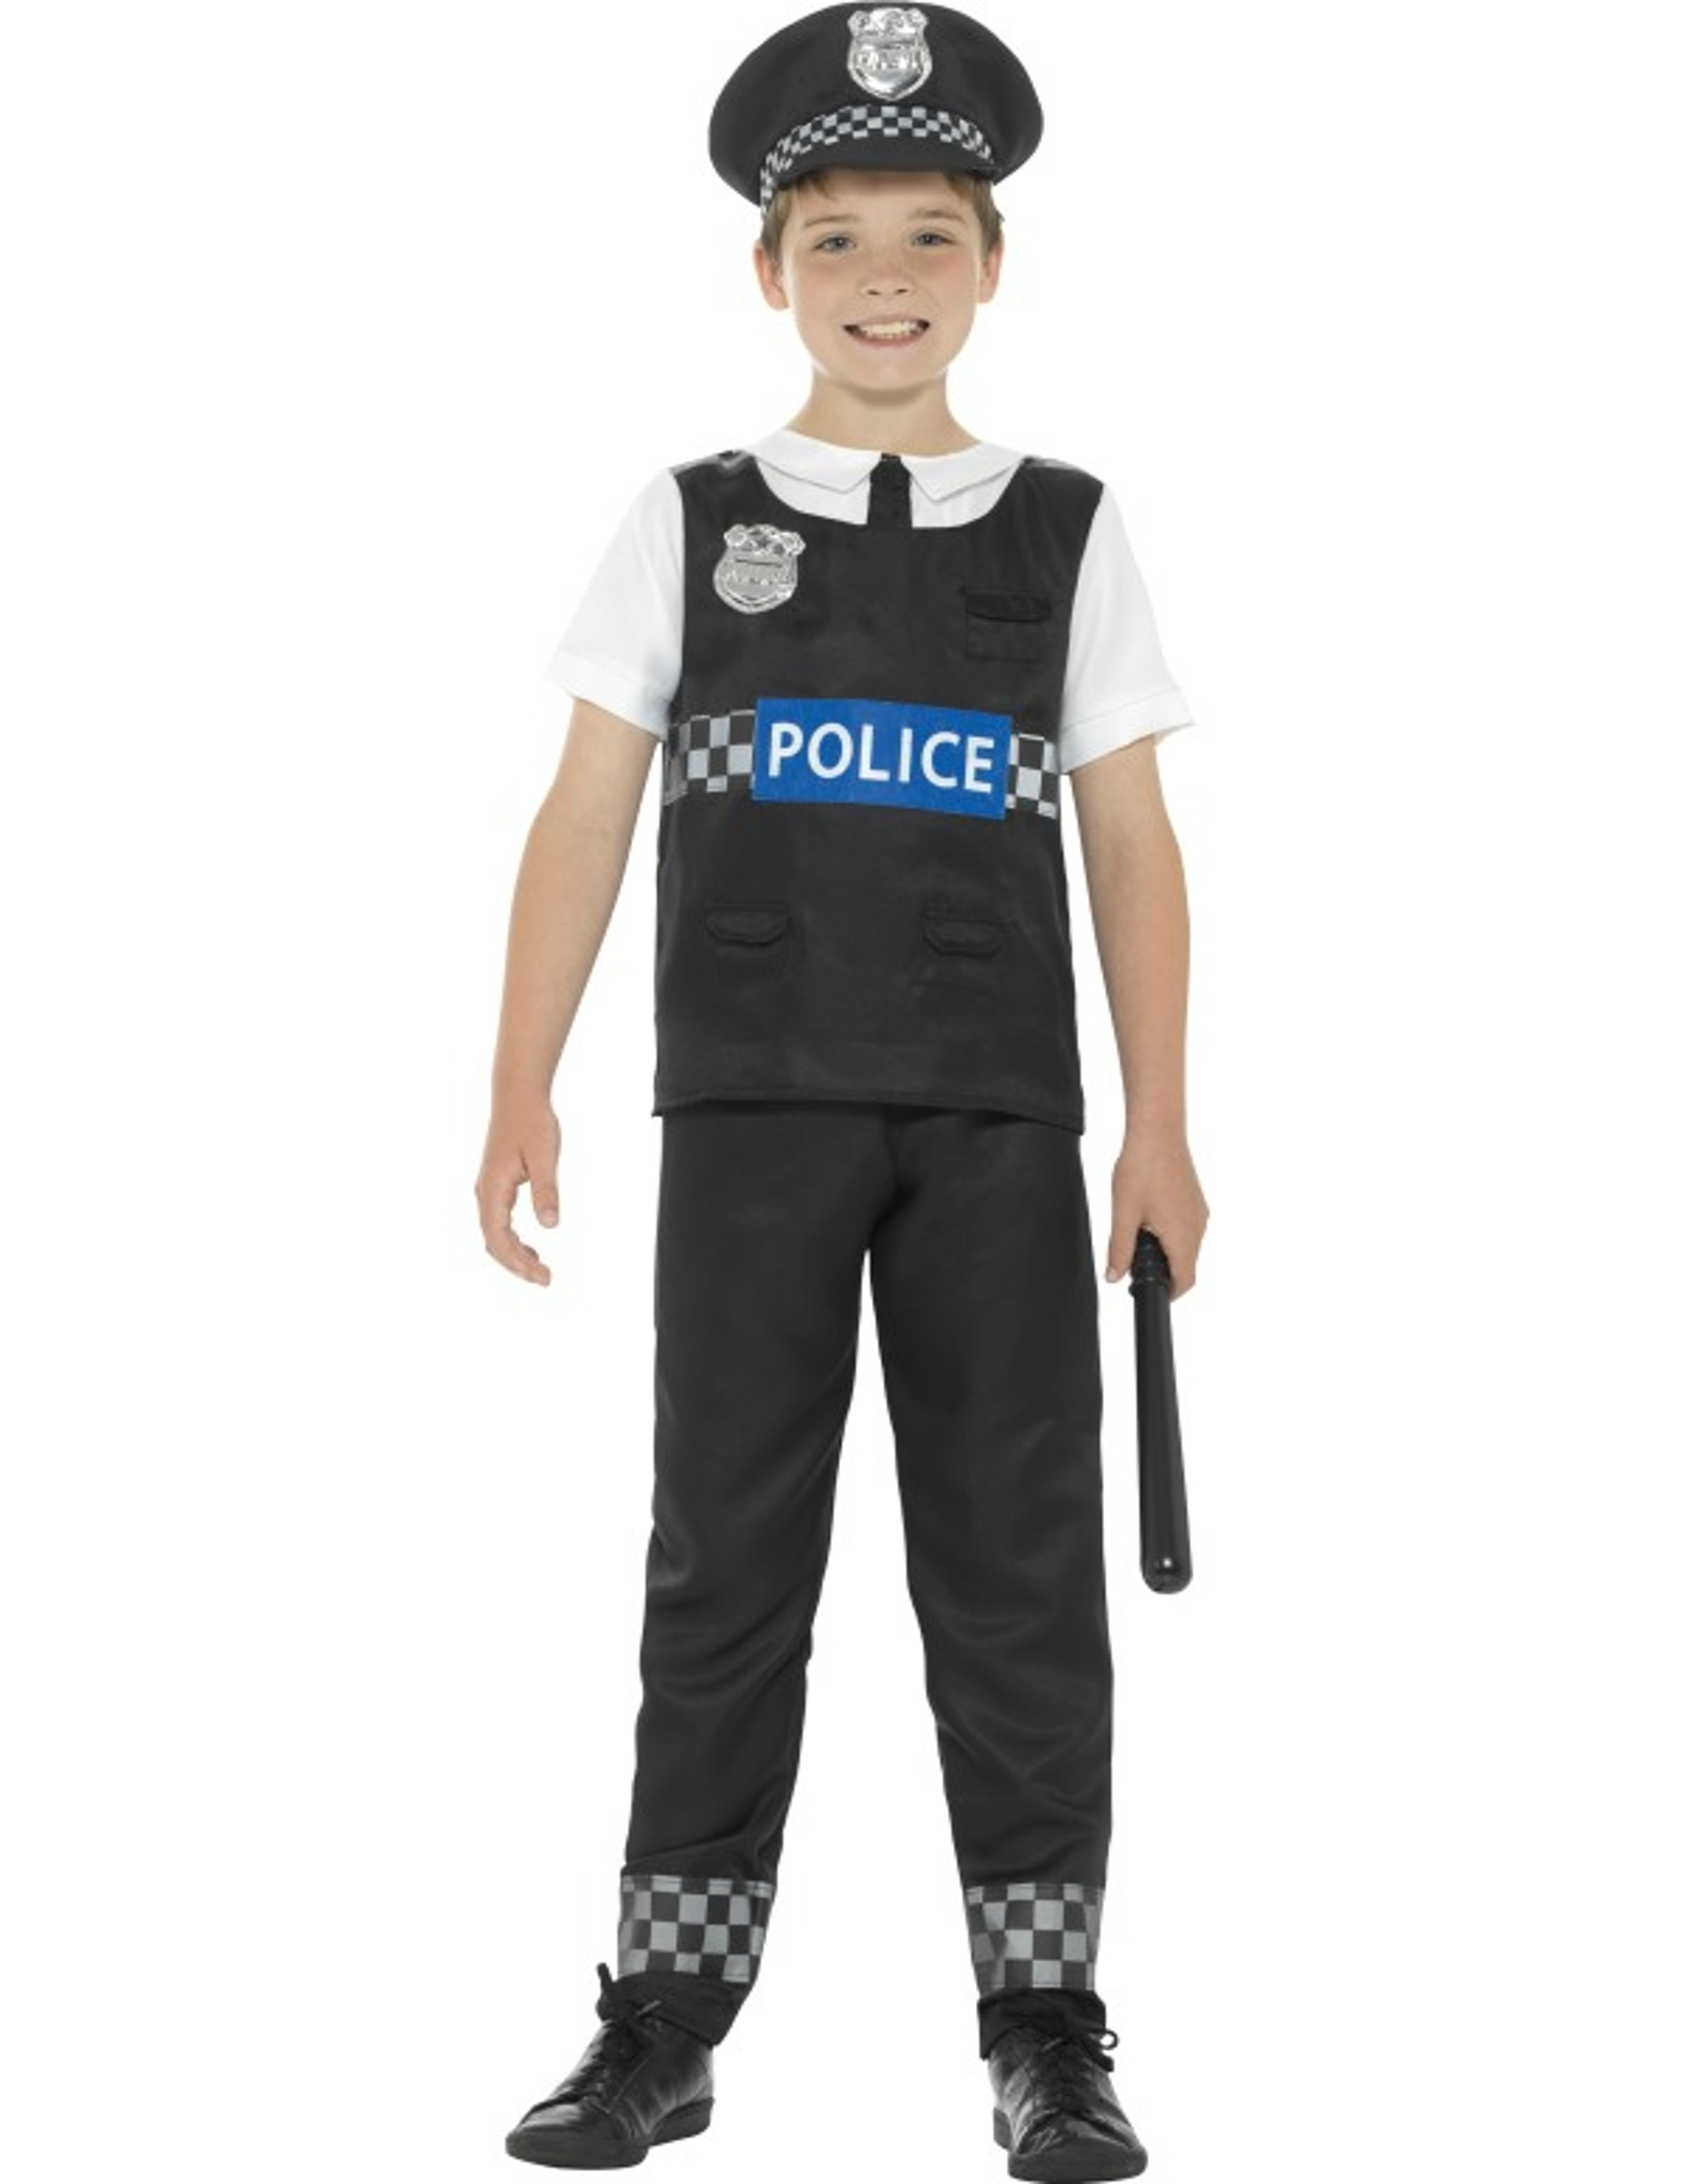 Kit complet policier enfant en plastique – Déguisements cadeaux pas chers, Boutique Arlequin